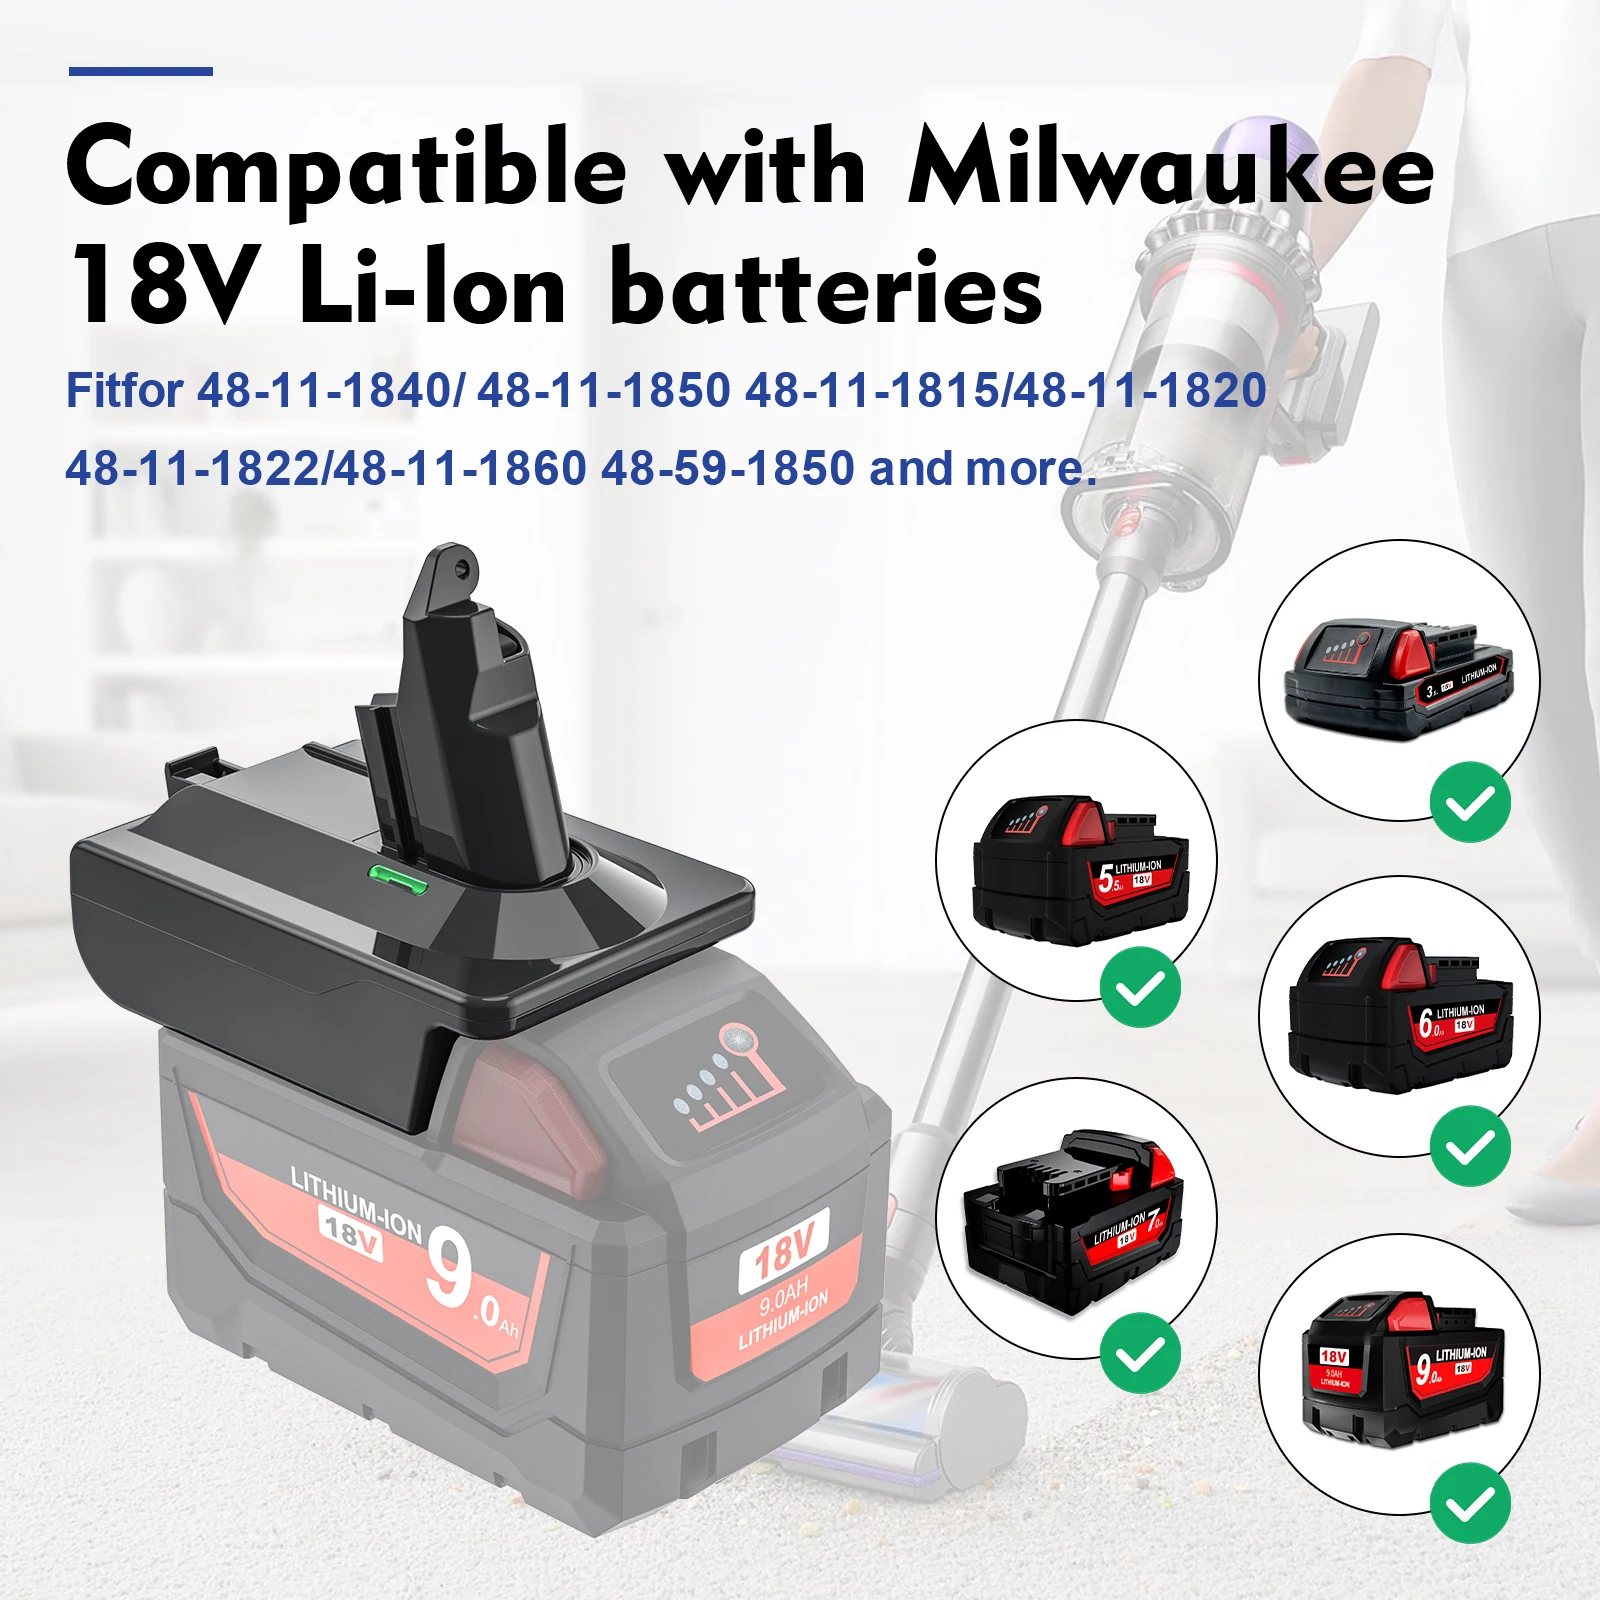 Adattatore per convertitore batteria al litio Makita/Dewalt/Milwauke 18V per strumento aspirapolvere serie Dyson V6 V7 V8 DC58/SV11/SV10